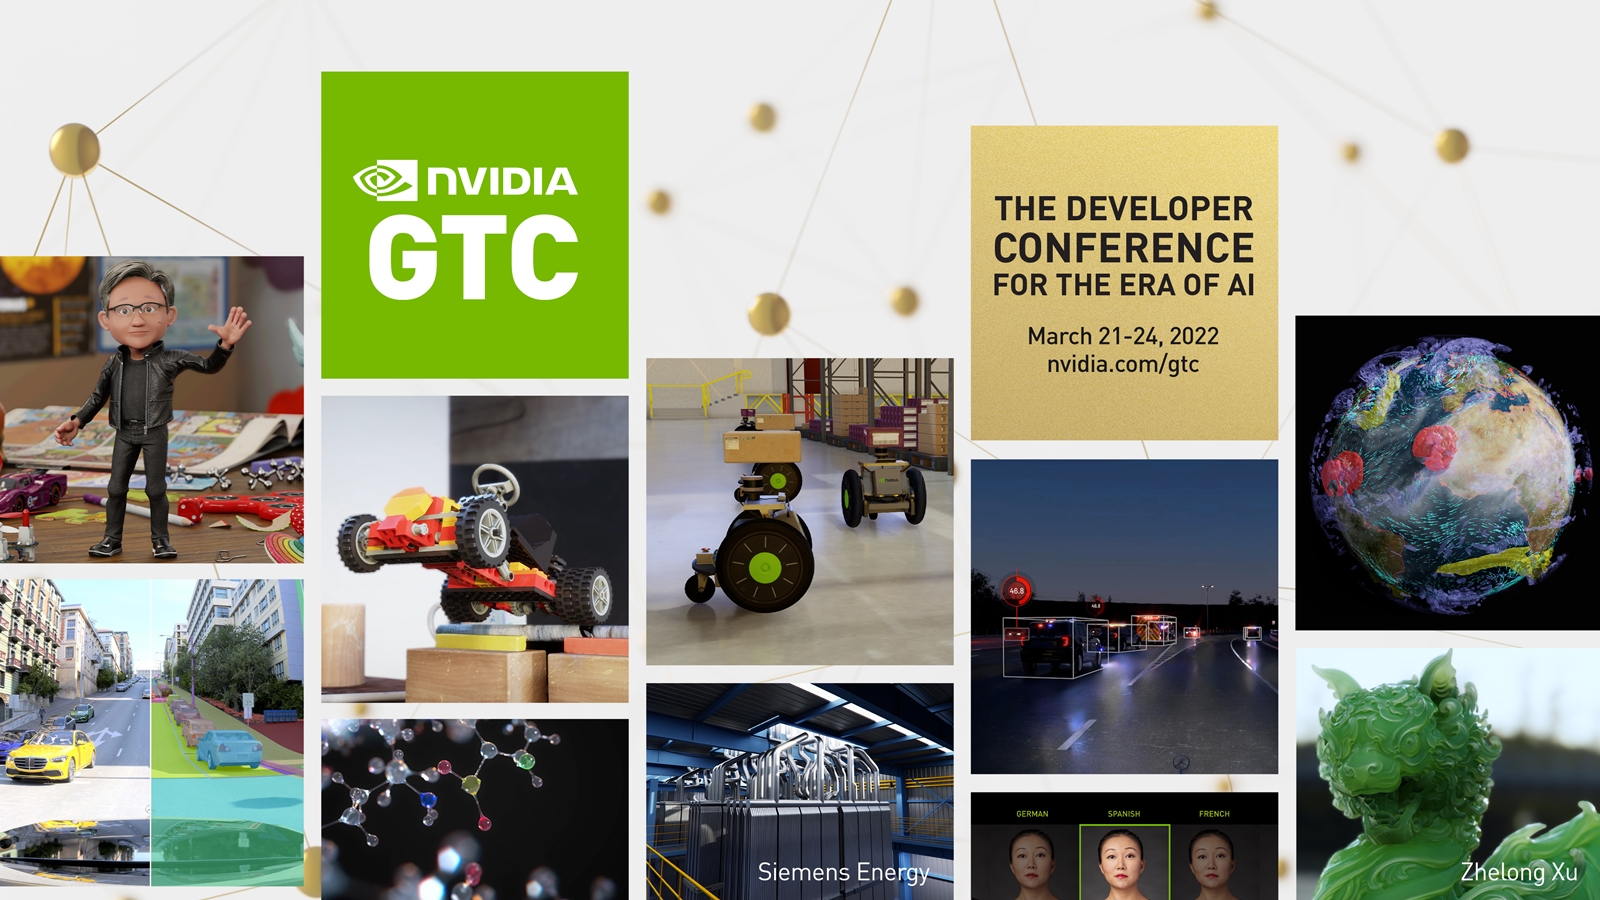 Chỉ với 5 phút bạn có cơ hội nhận được card đồ họa đắt đỏ RTX 3070 từ Nvidia thông qua sự kiện NVIDIA GTC 2022